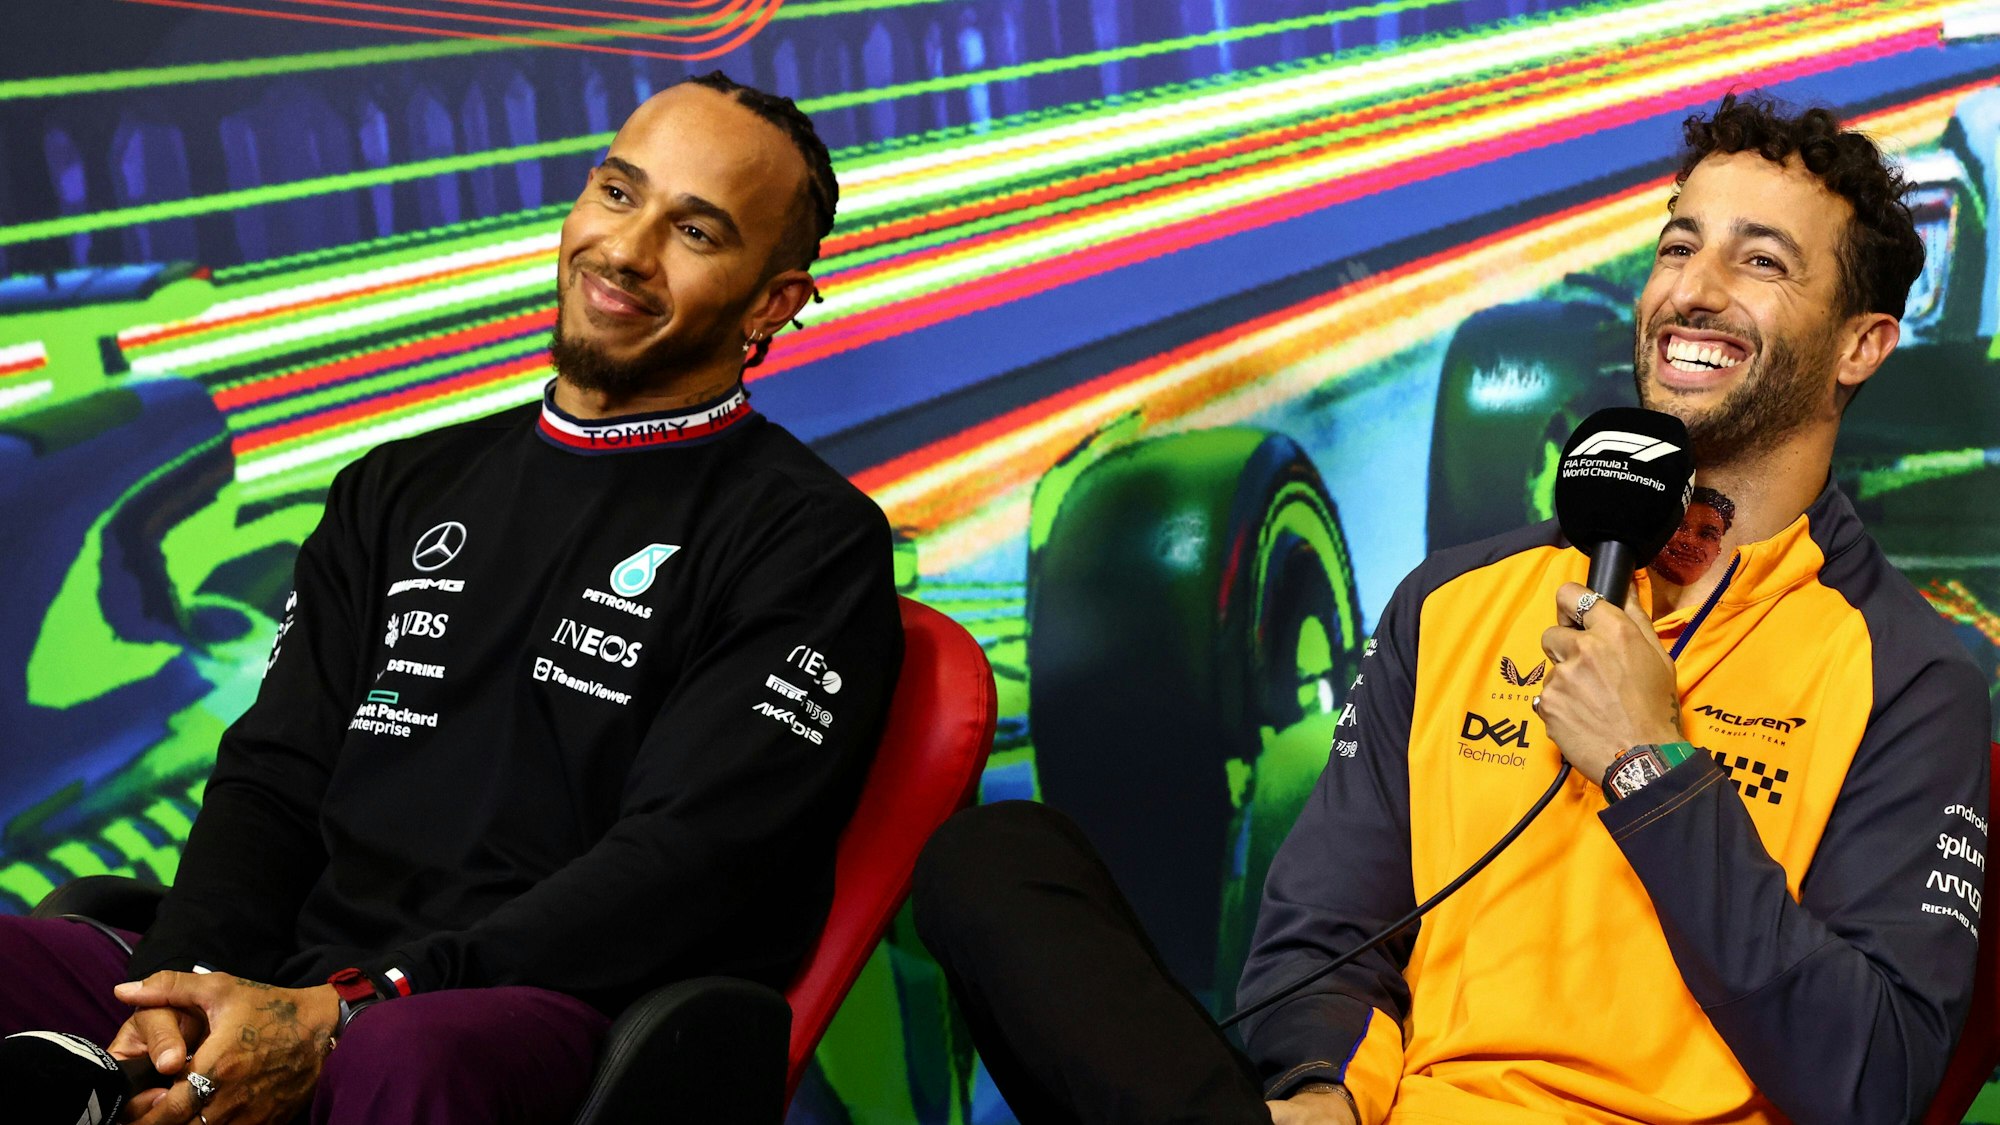 Daniel Ricciardo (r.) sitzt bei einer Pressekonferenz in einem orangen McLaren-Oberteil neben Lewis Hamilton, Formel-1-Fahrer bei Mercedes. Beide Fahrer lachen. Das Foto wurde im Rahmen des Großen Preis von Italien in Monza am 8. September 2022 aufgenommen.